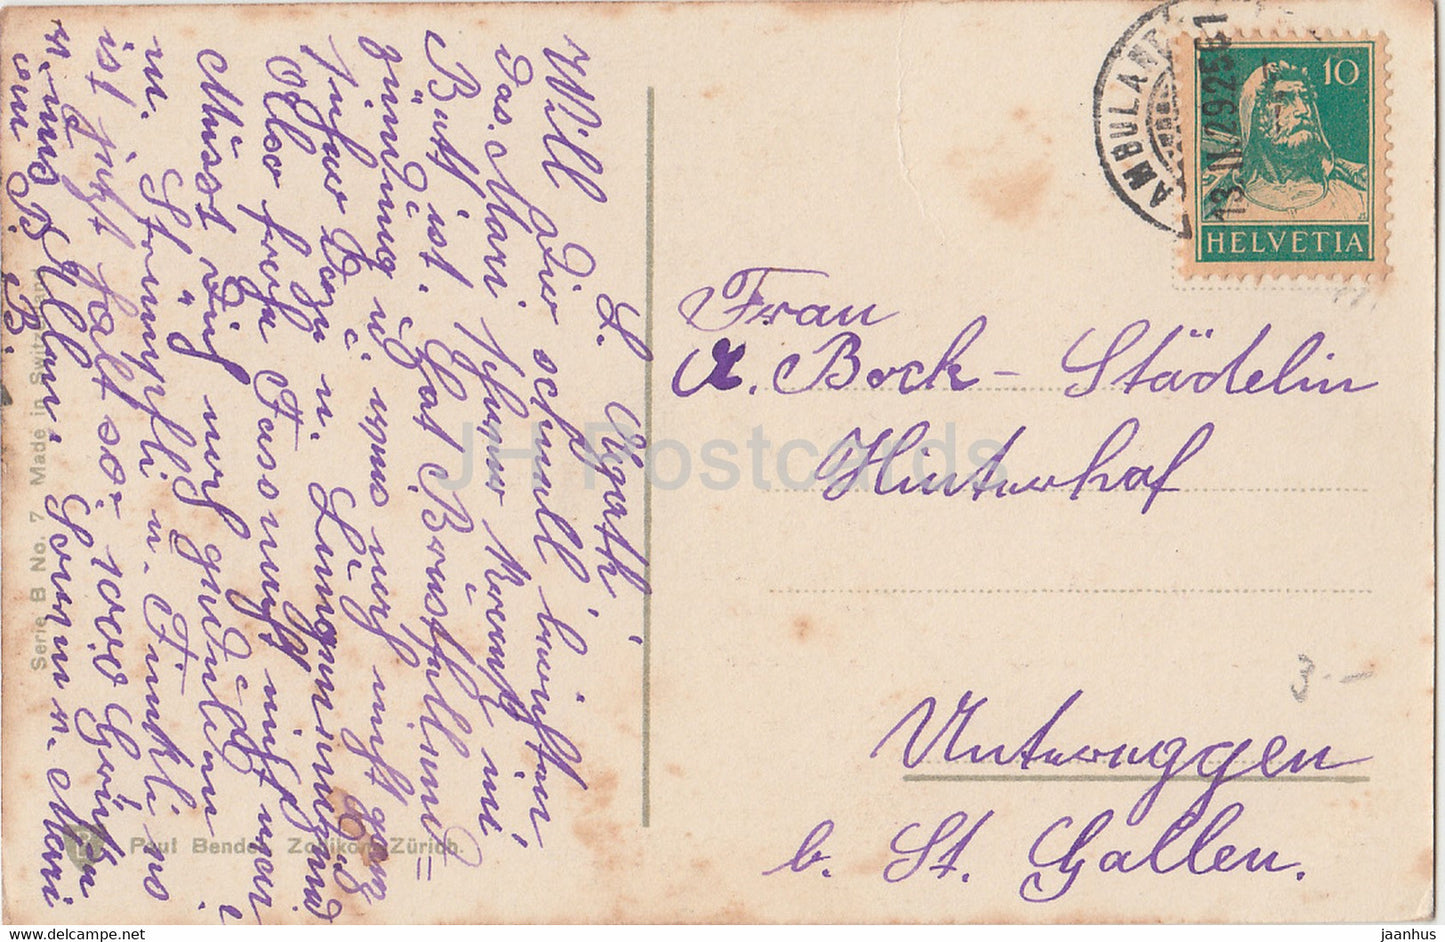 roses rouges - fleurs - Paul Bender - No 7 - carte postale ancienne - 1929 - Suisse - utilisé